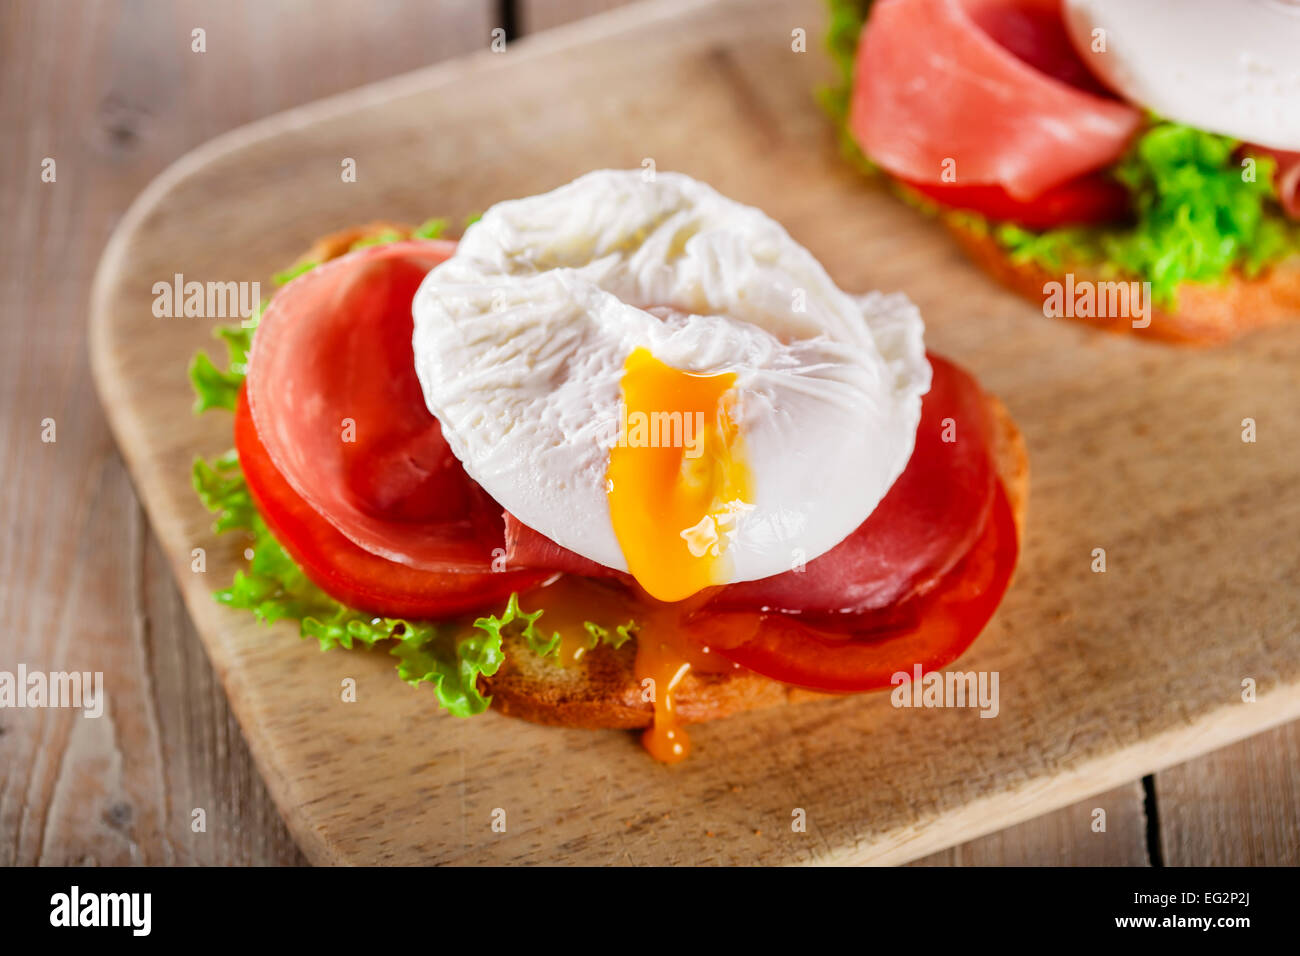 Avec prosciutto sandwich tomate et œuf poché Banque D'Images